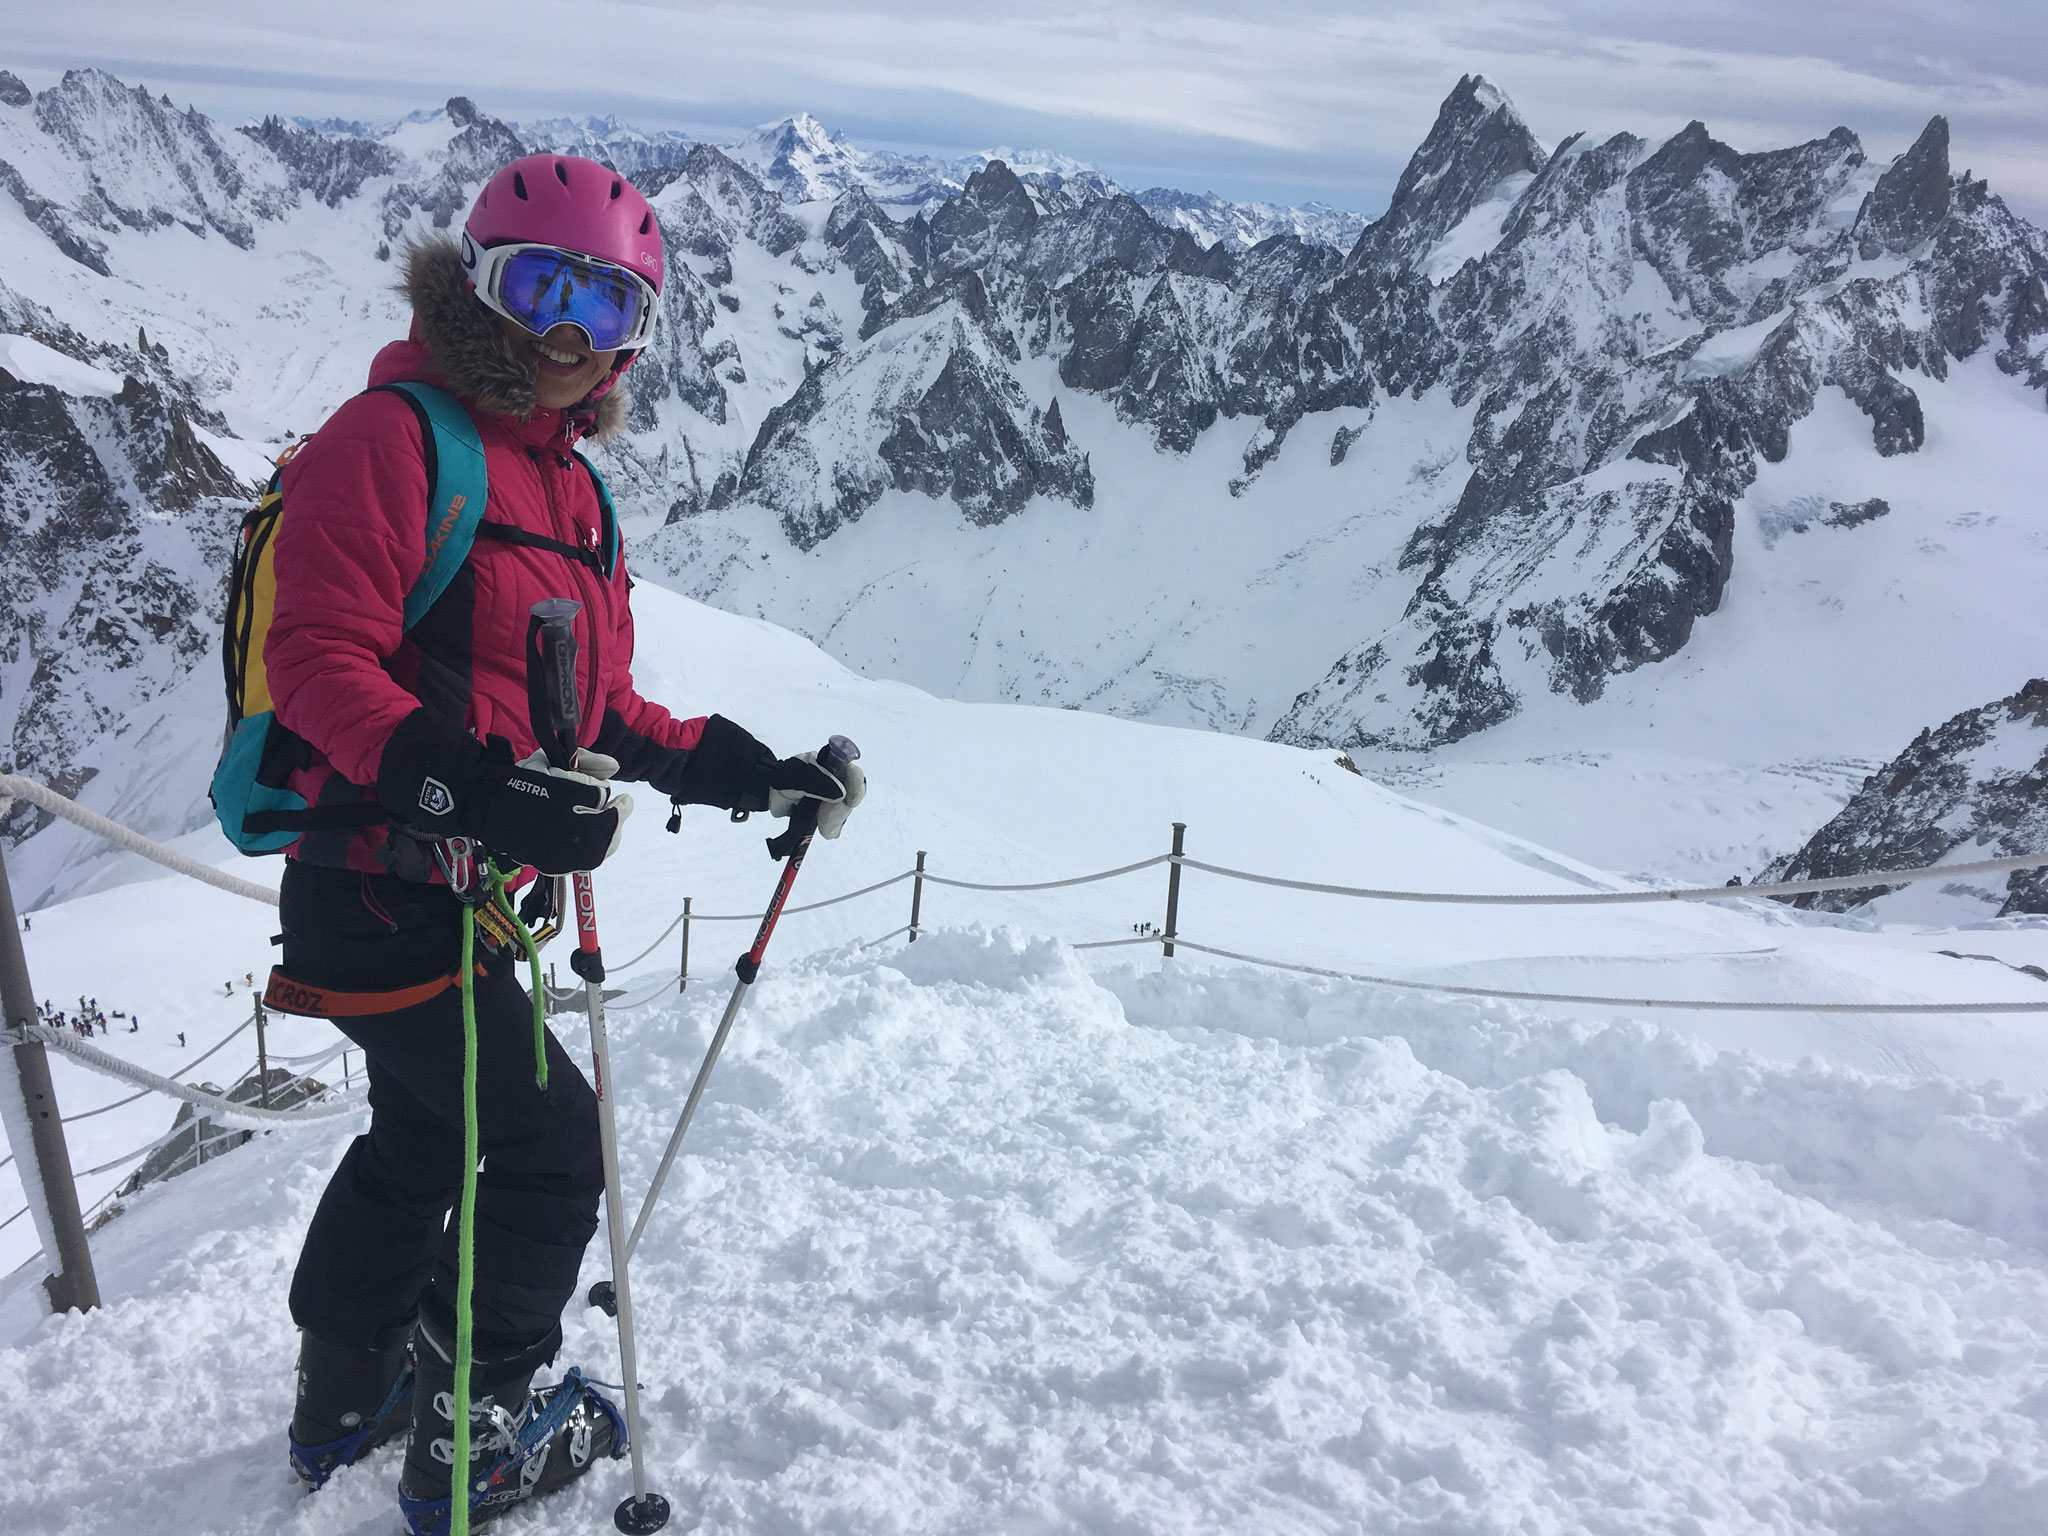 Anna au départ de ce fantastique voyage à ski